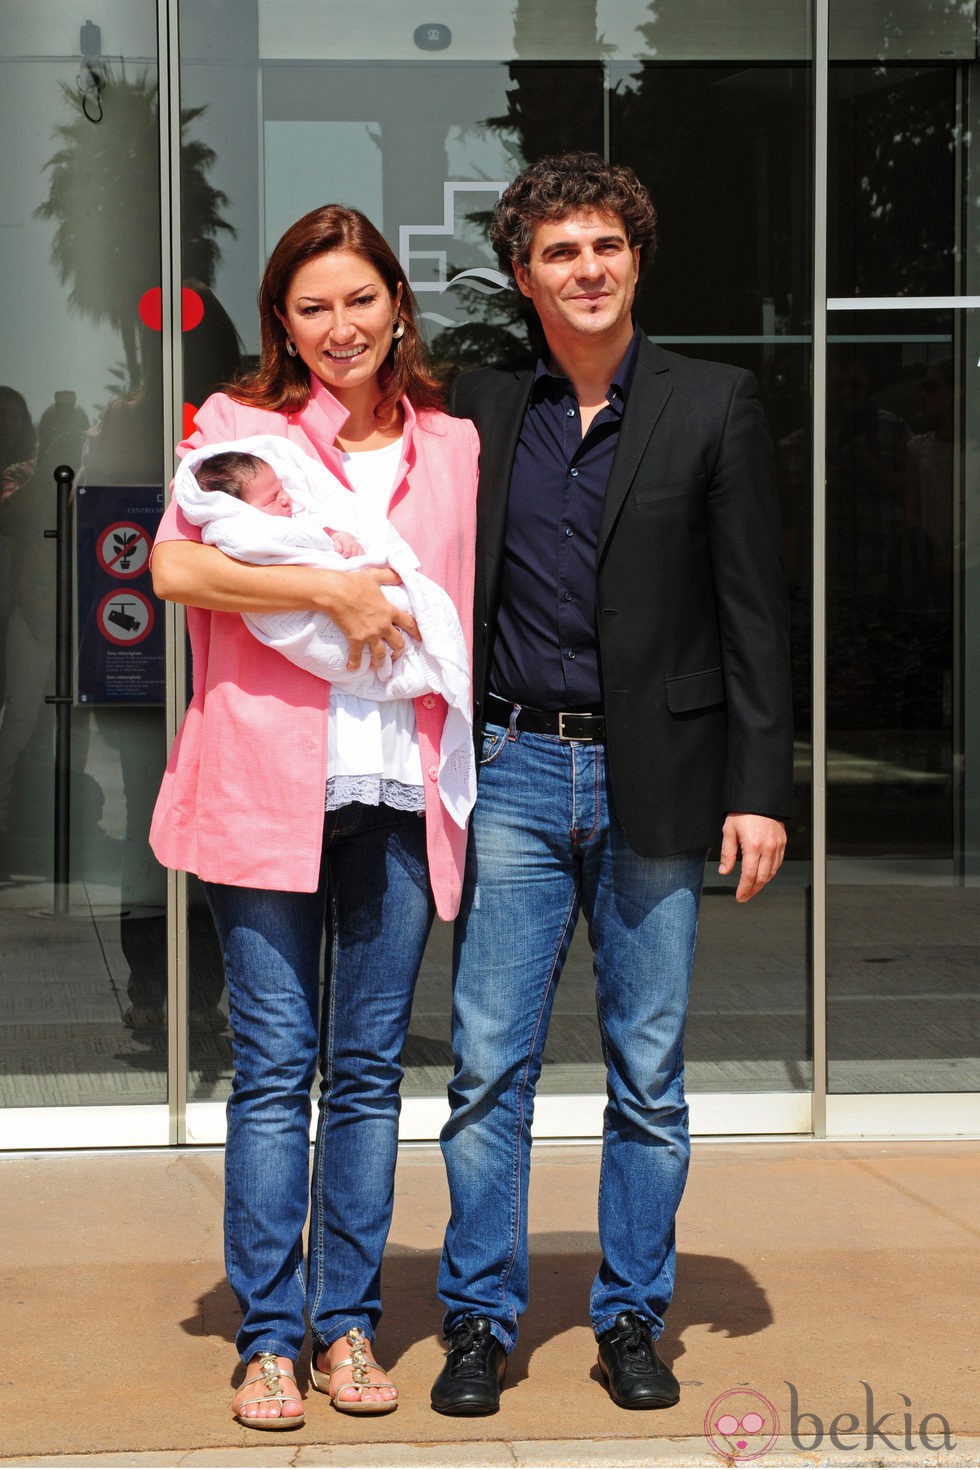 Montserrat Martí y Daniel Faidella presentan a su hija Daniela